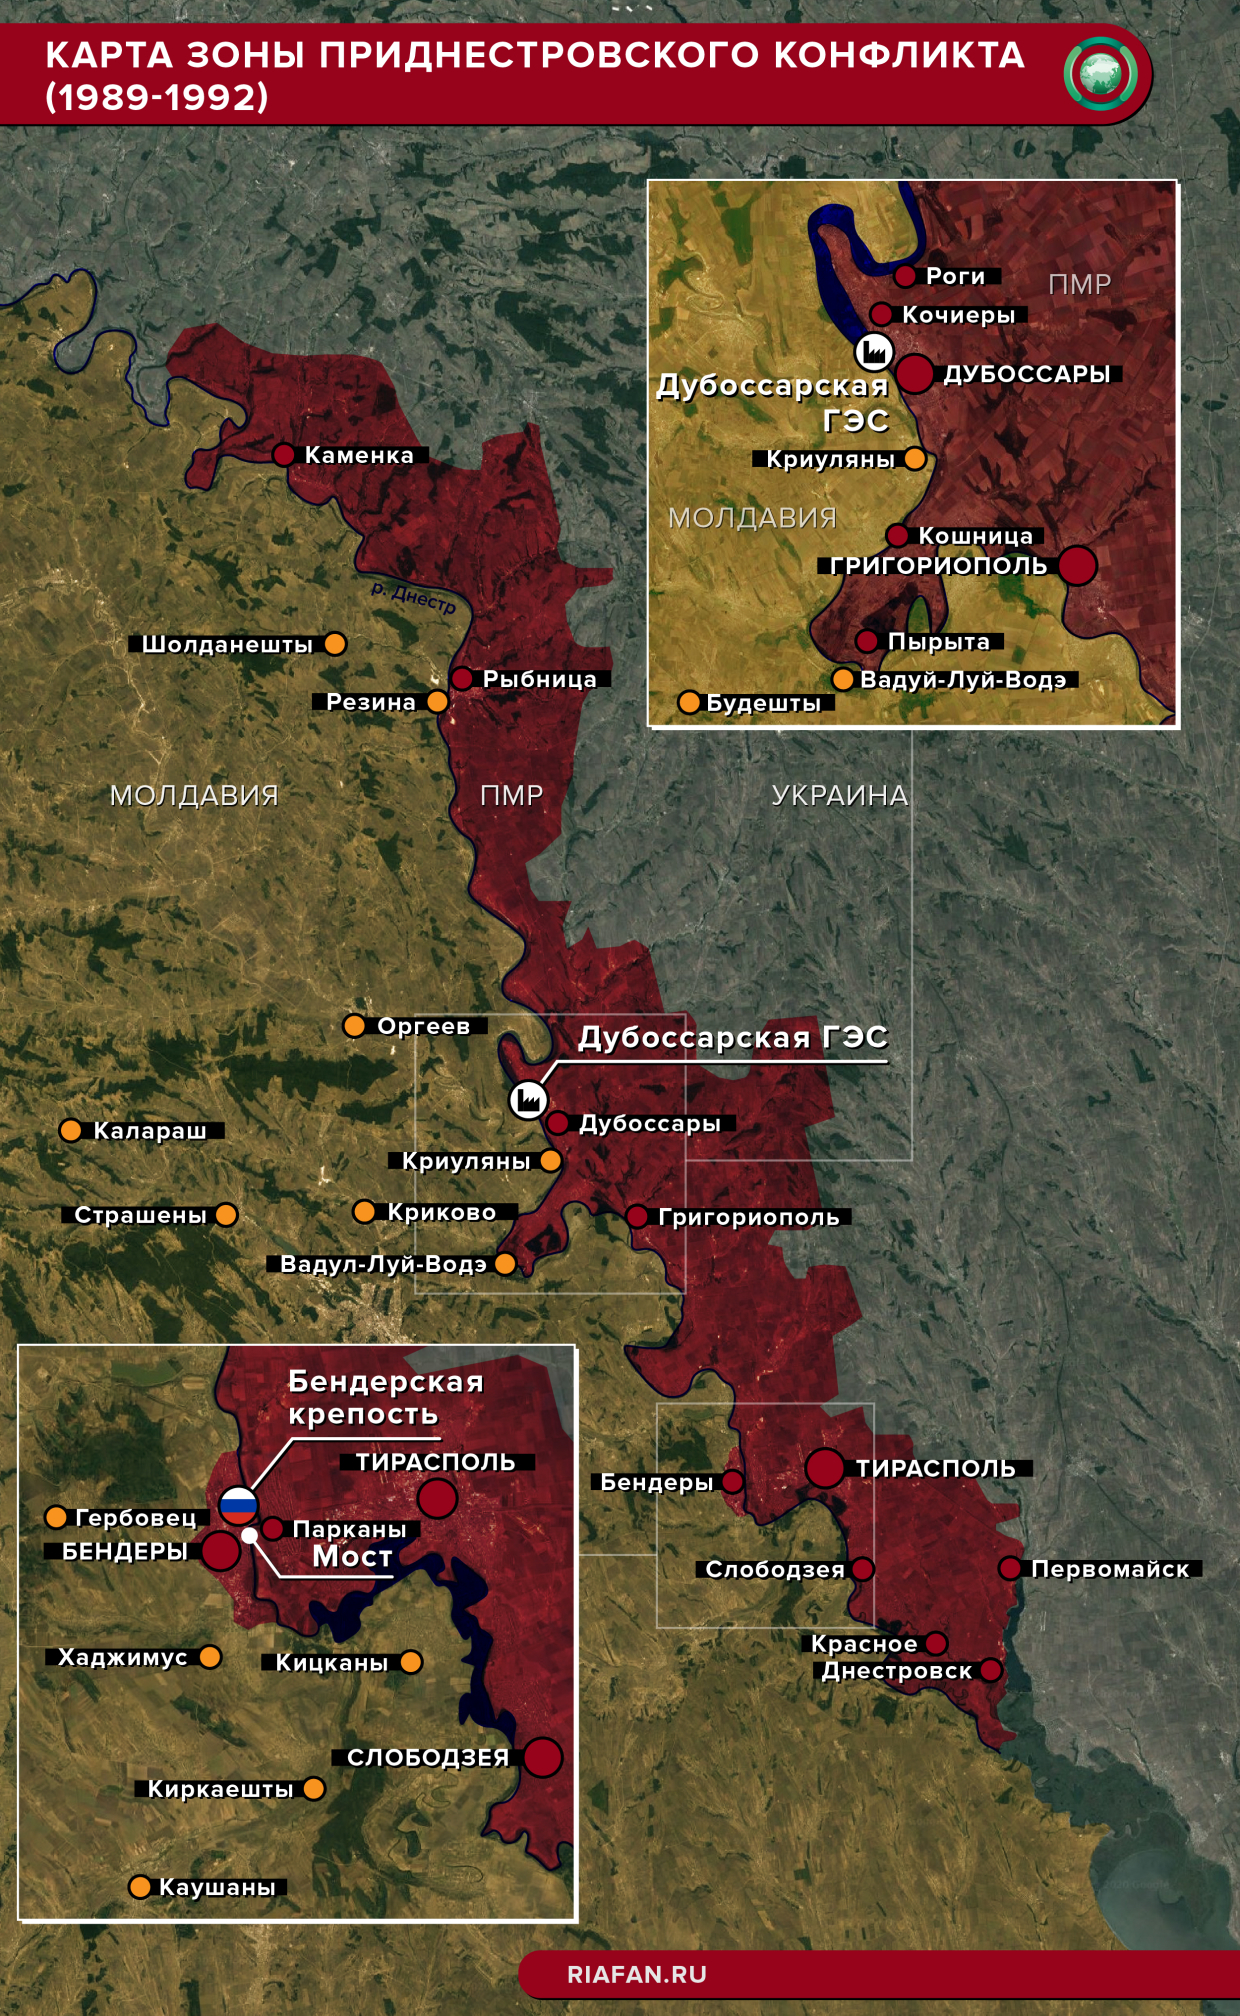 Карта зоны приднестровского конфликта 1989-1992 гг.